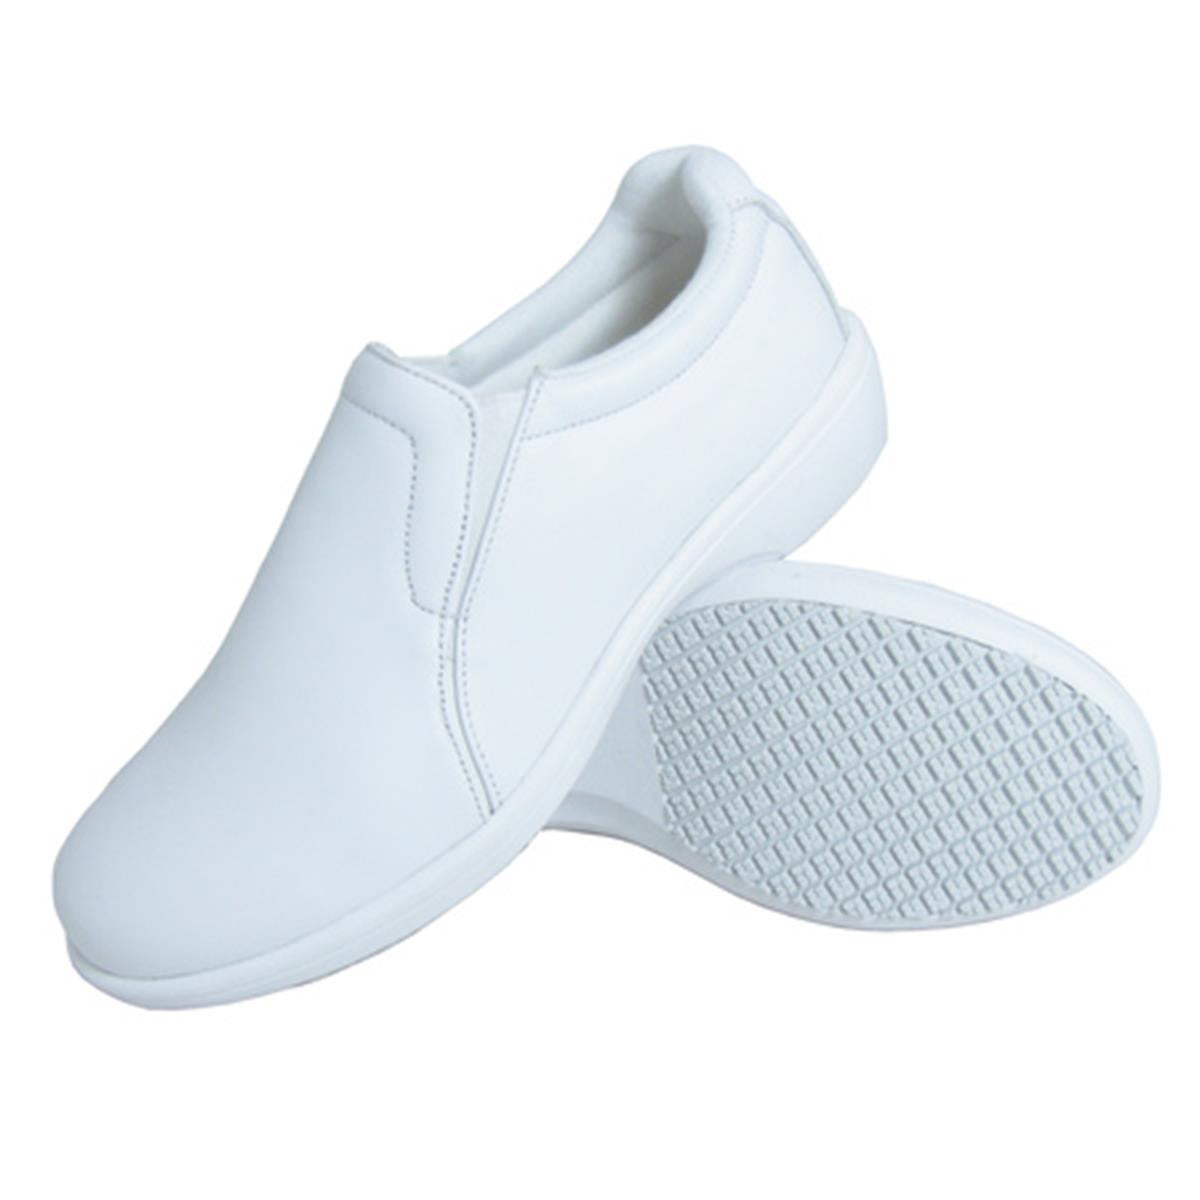 Genuine Grip Footwear- 415 White Slip on White Women's Shoe-eSafety Supplies, Inc